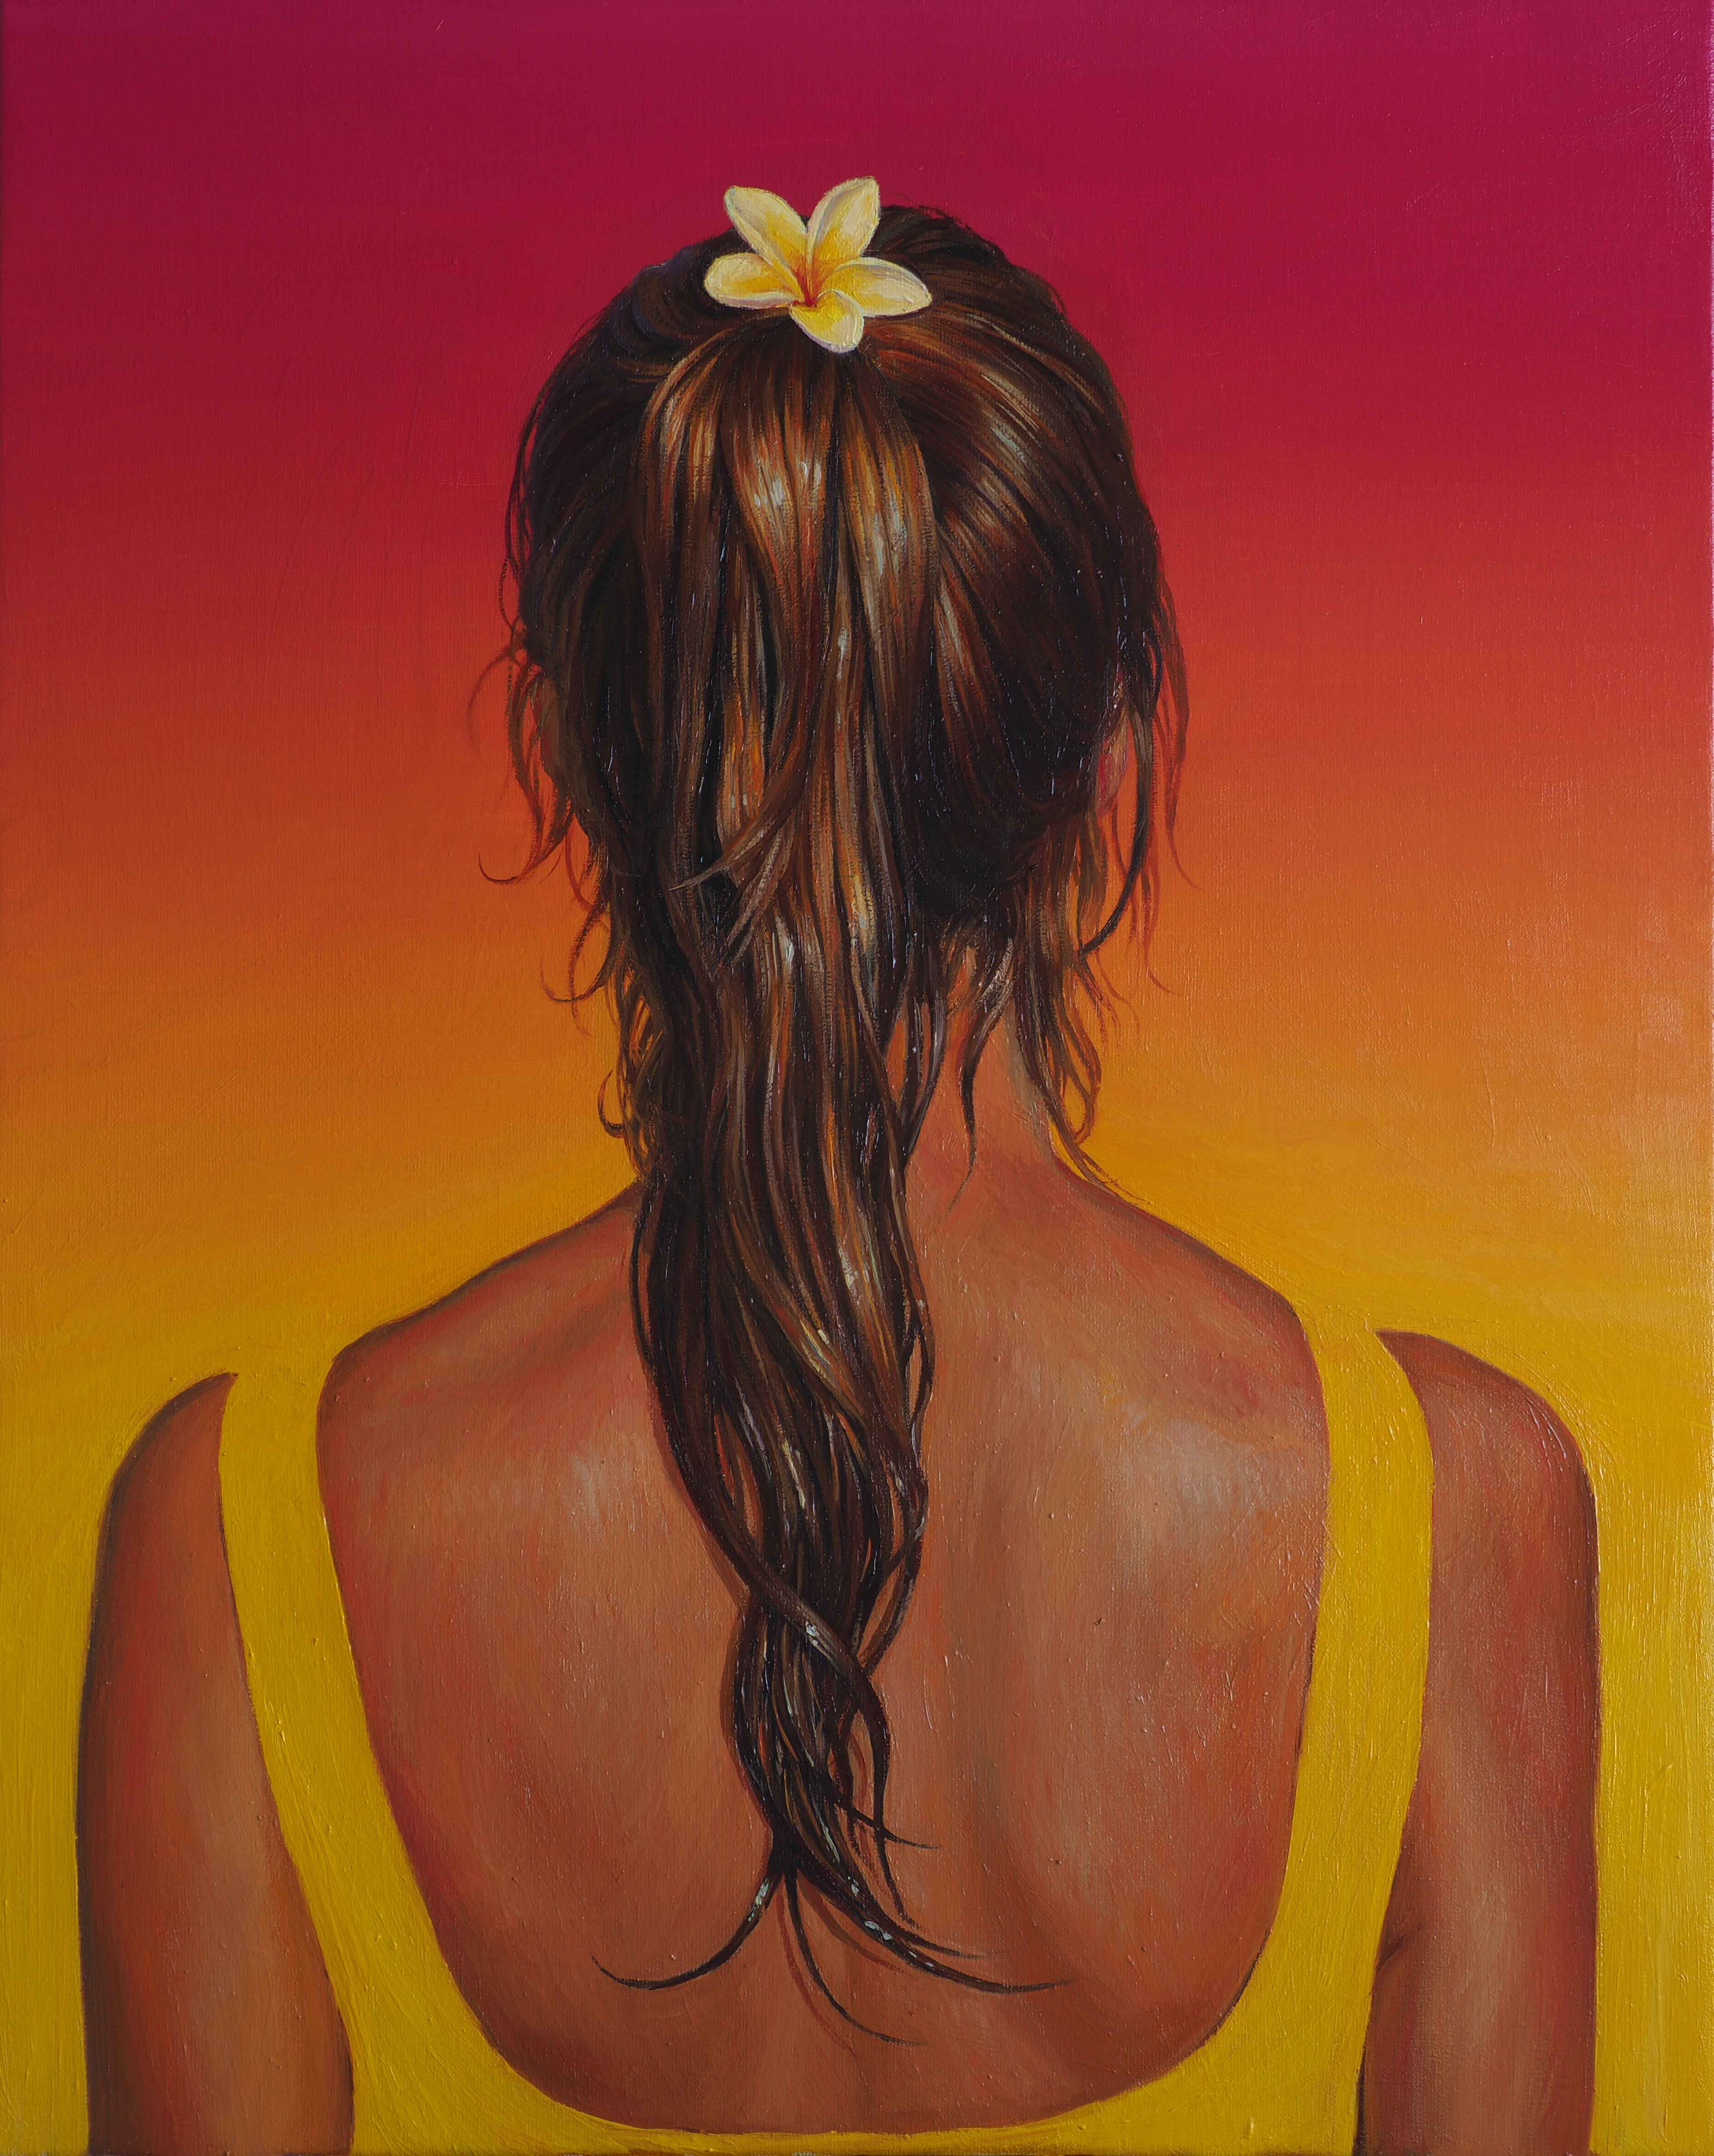 Tropical - 1, Sasha Sokolova, Buy the painting Oil